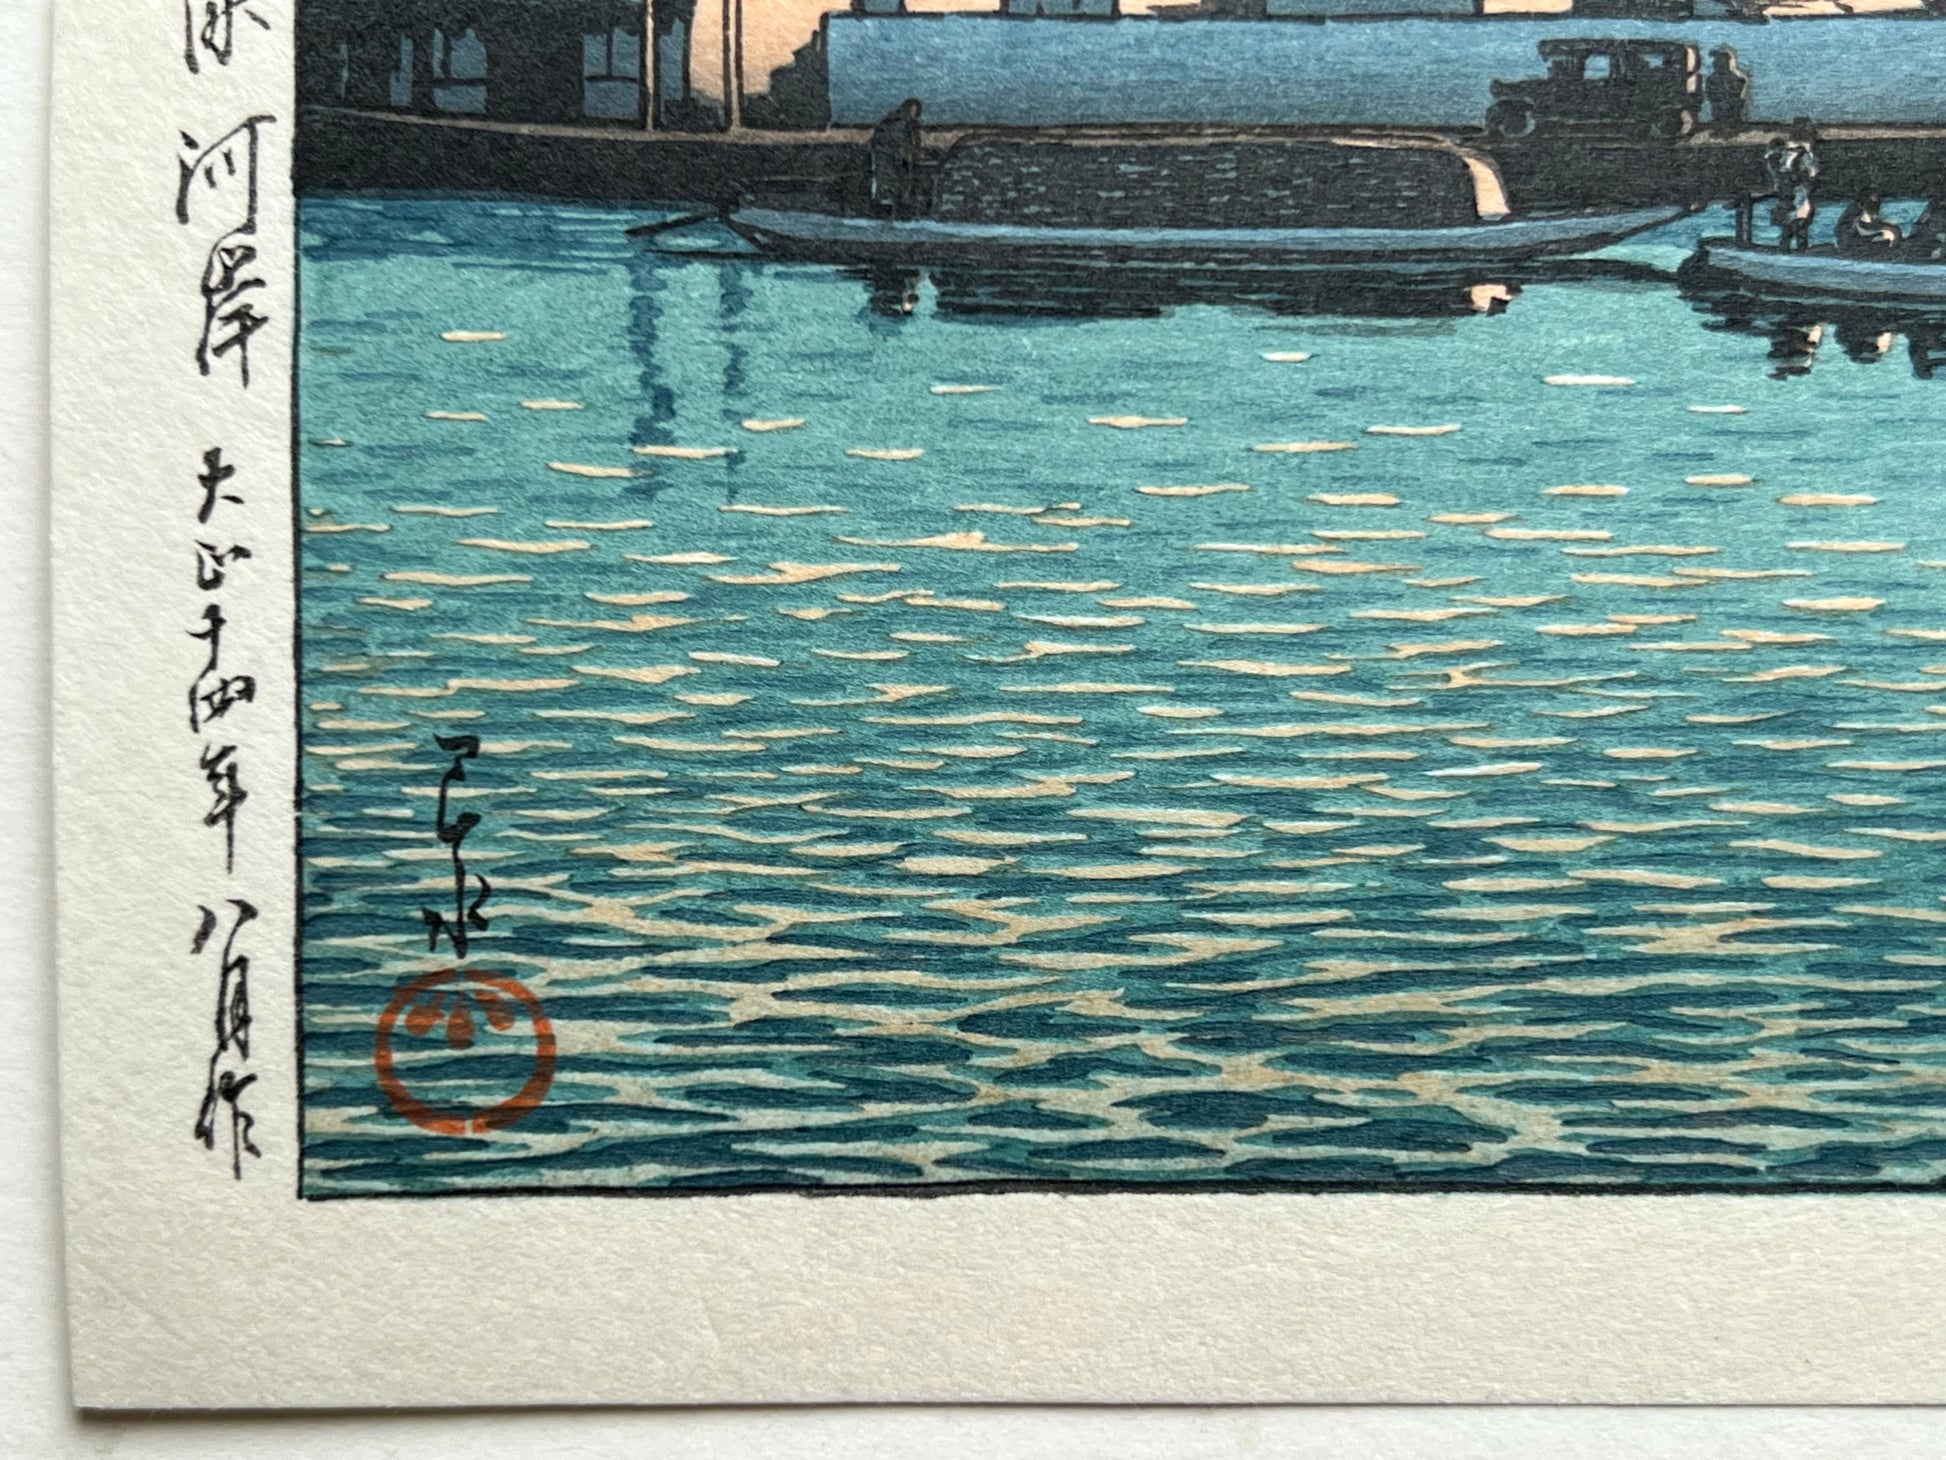 estampe japonaise de hasui kawase paysage riviere, maison, bateau au coucher du soleil, la signature de l'artiste